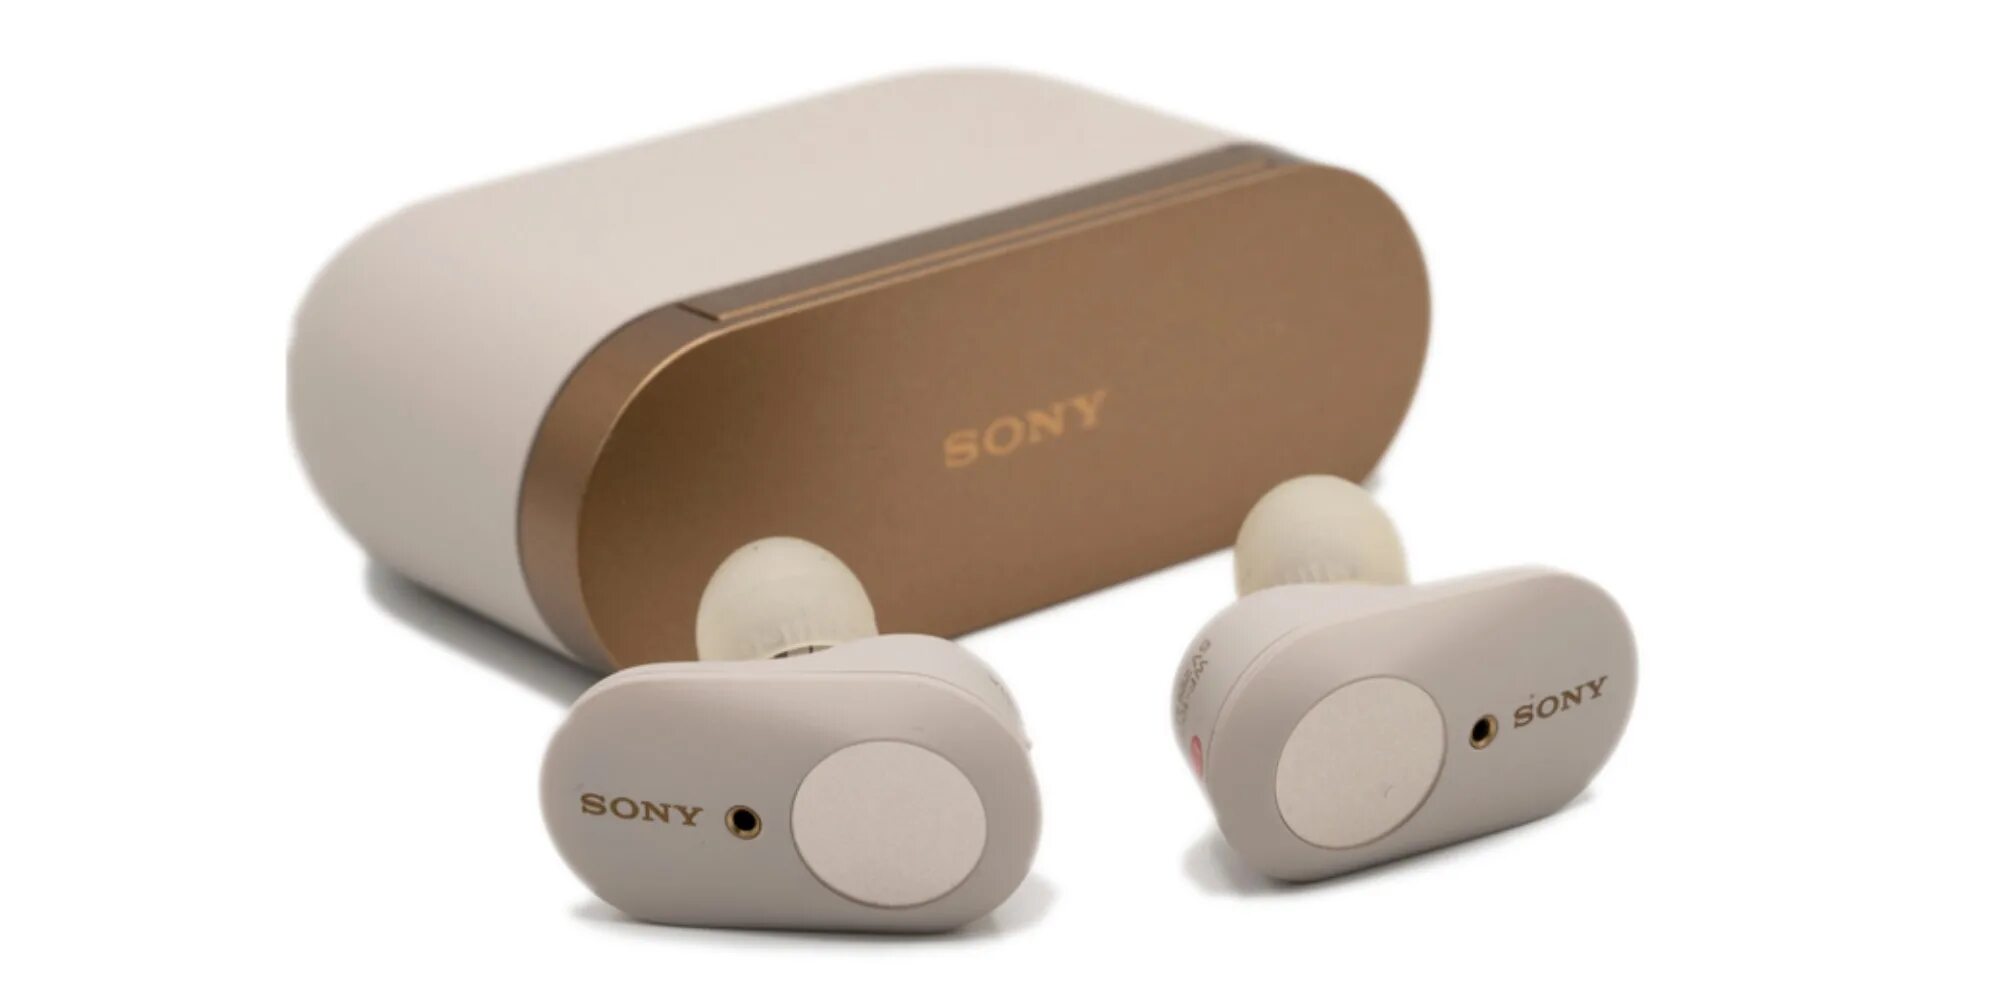 Sony true. Sony WF-1000xm3. Sony WF-1000xm3 Wireless Bluetooth Noise-Cancelling Earbuds. Sony true Wireless. Sony WF-1000xm3 PNG.